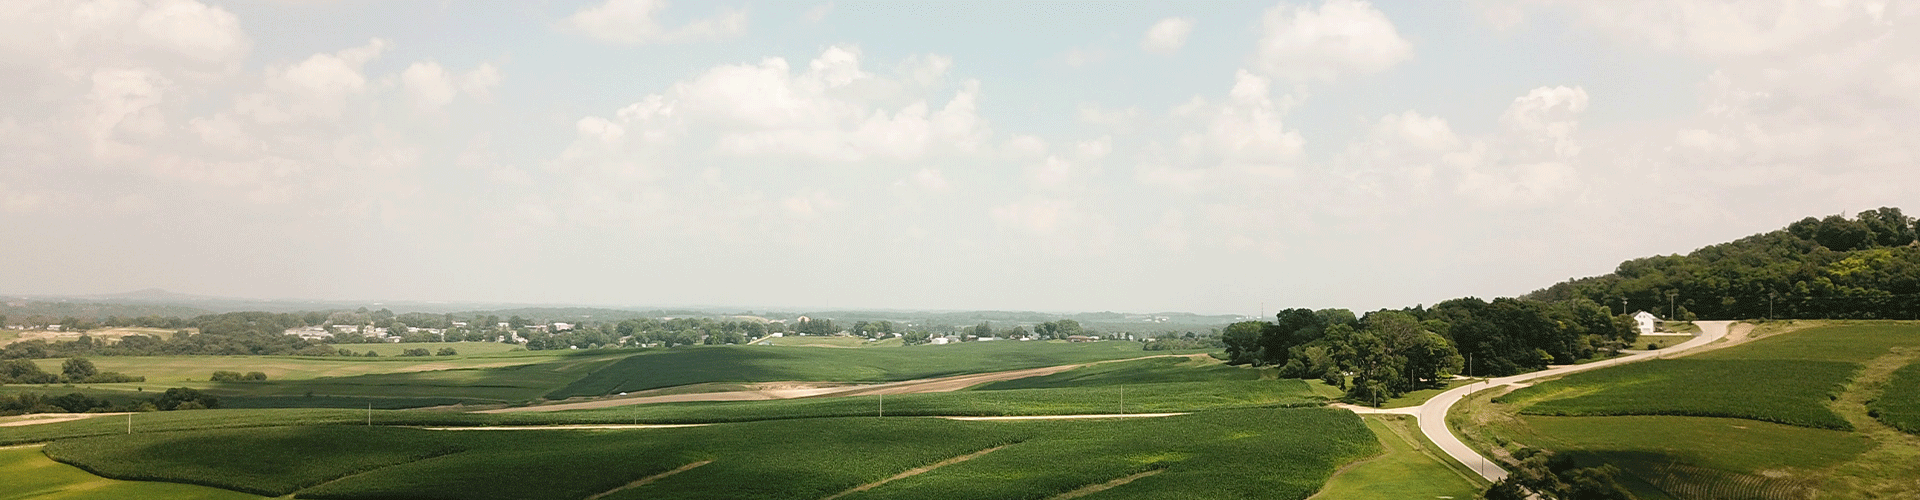 Rural.